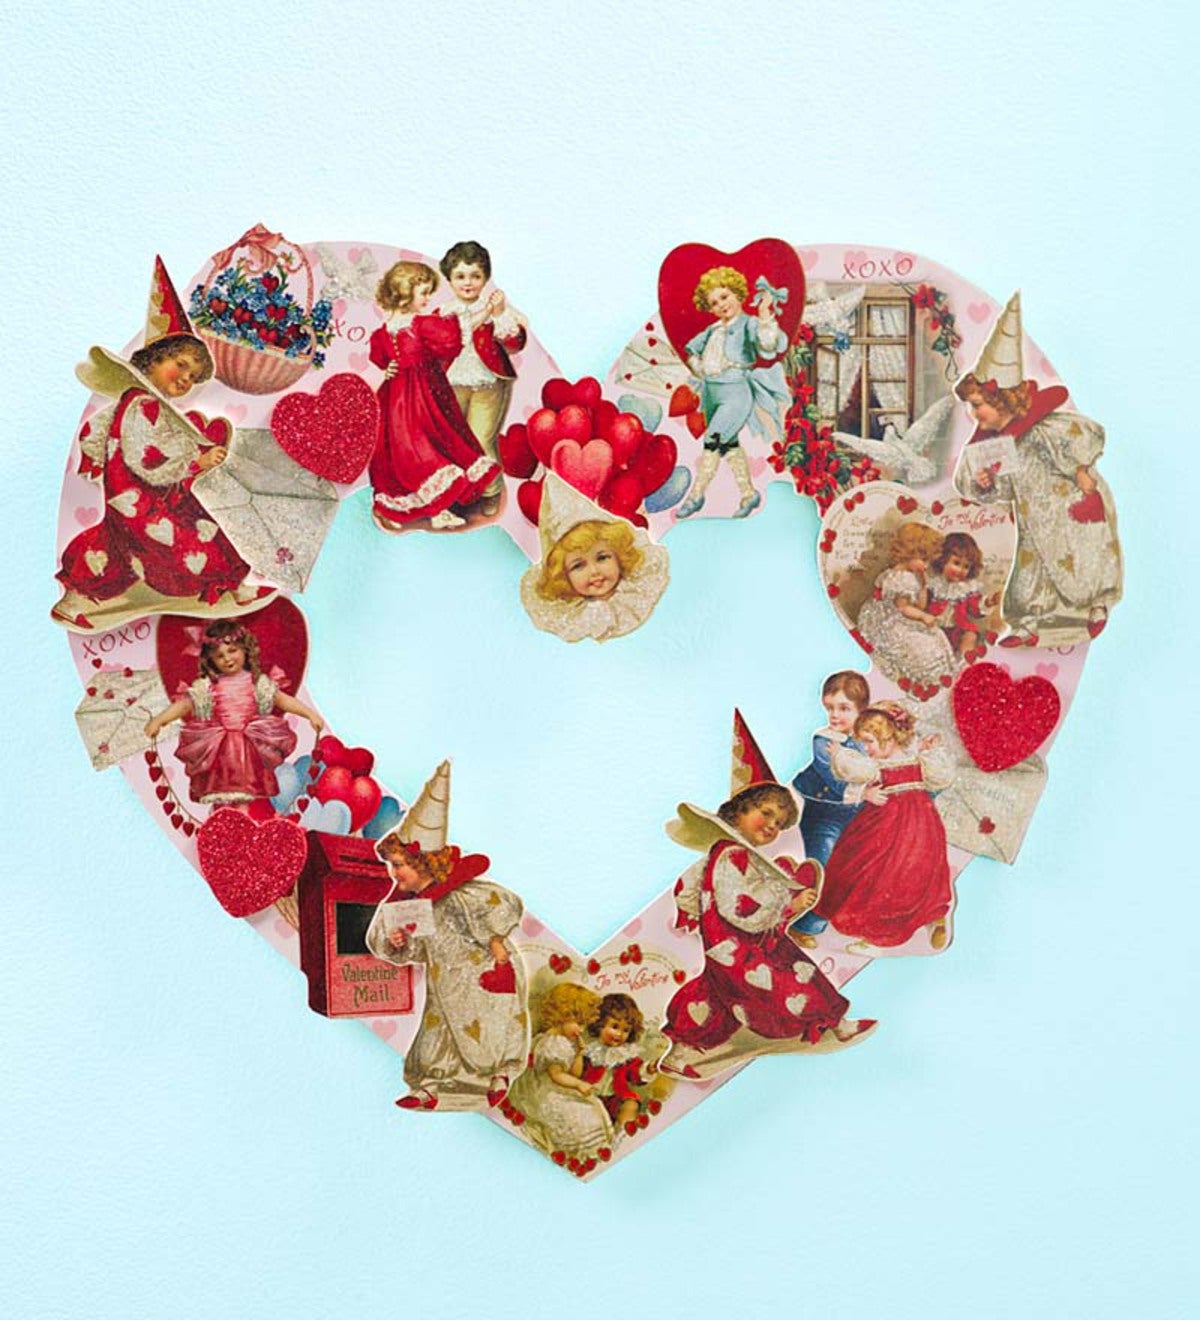 Vintage valentine inspired red heart wreath